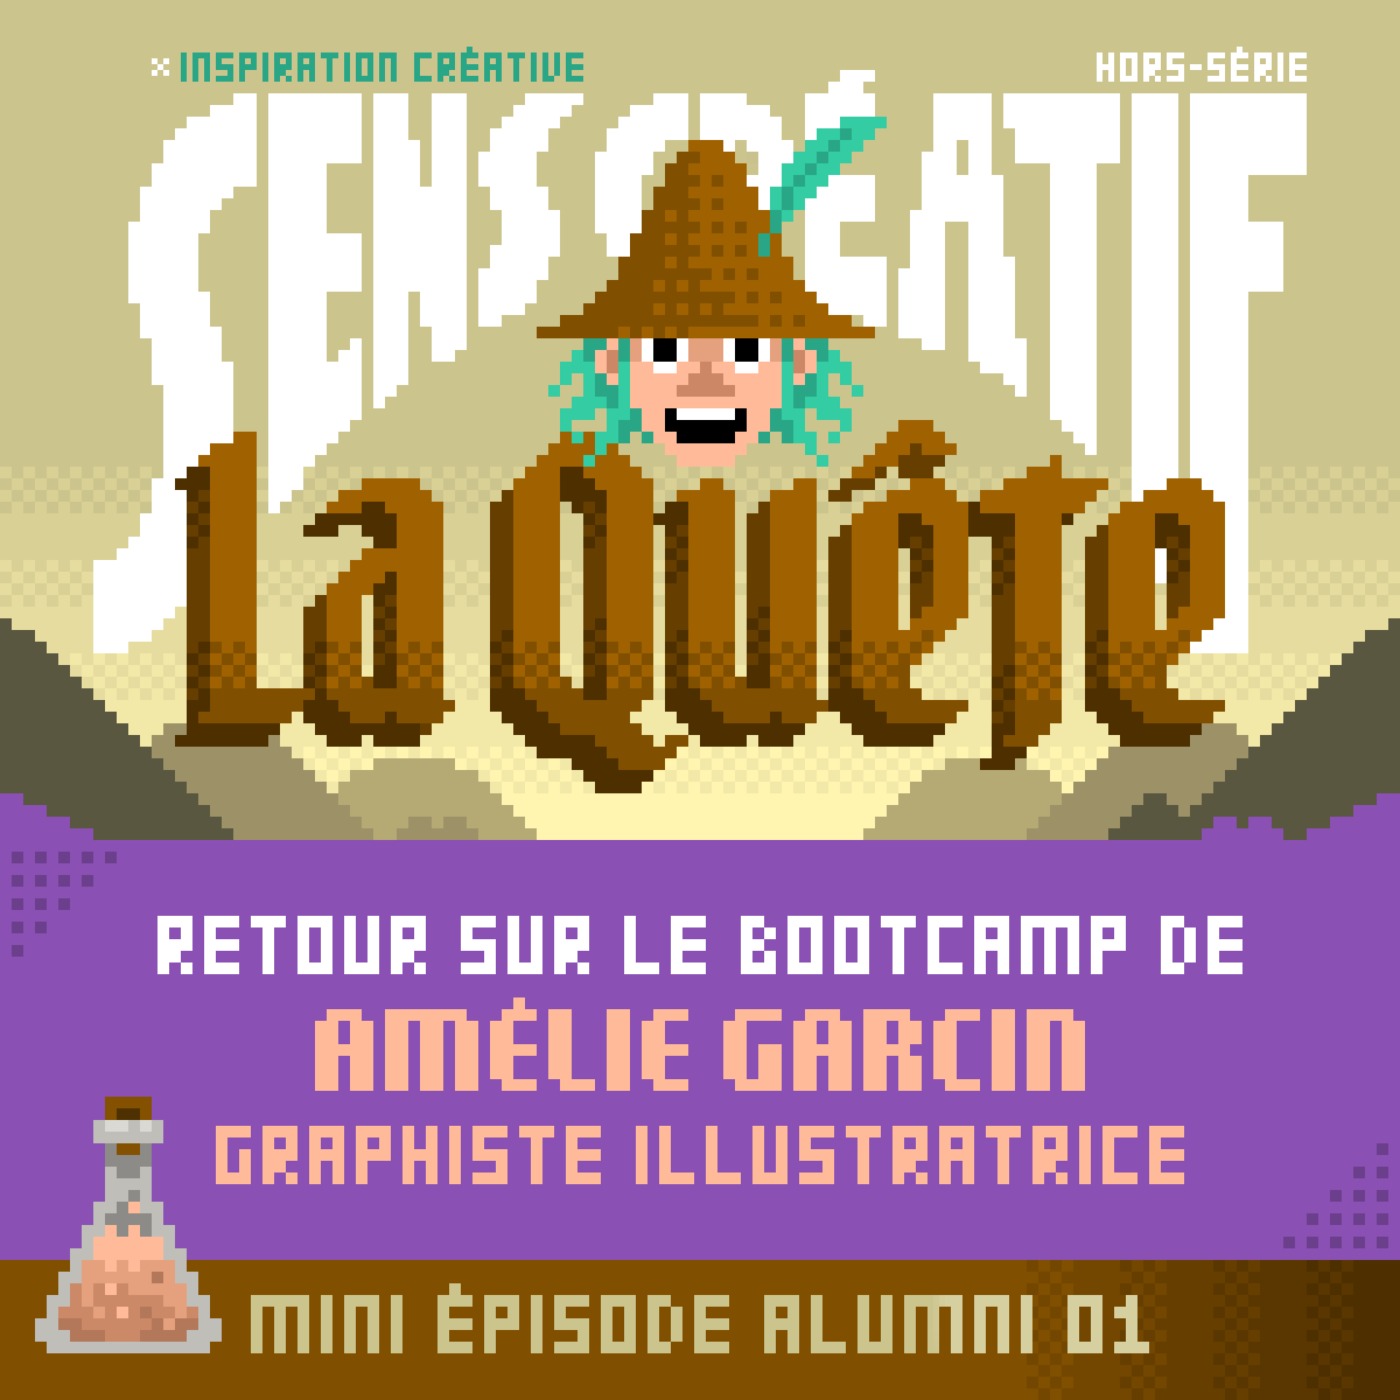 La Quête : le bootcamp d'Amélie Garcin (graphiste, illustratrice)